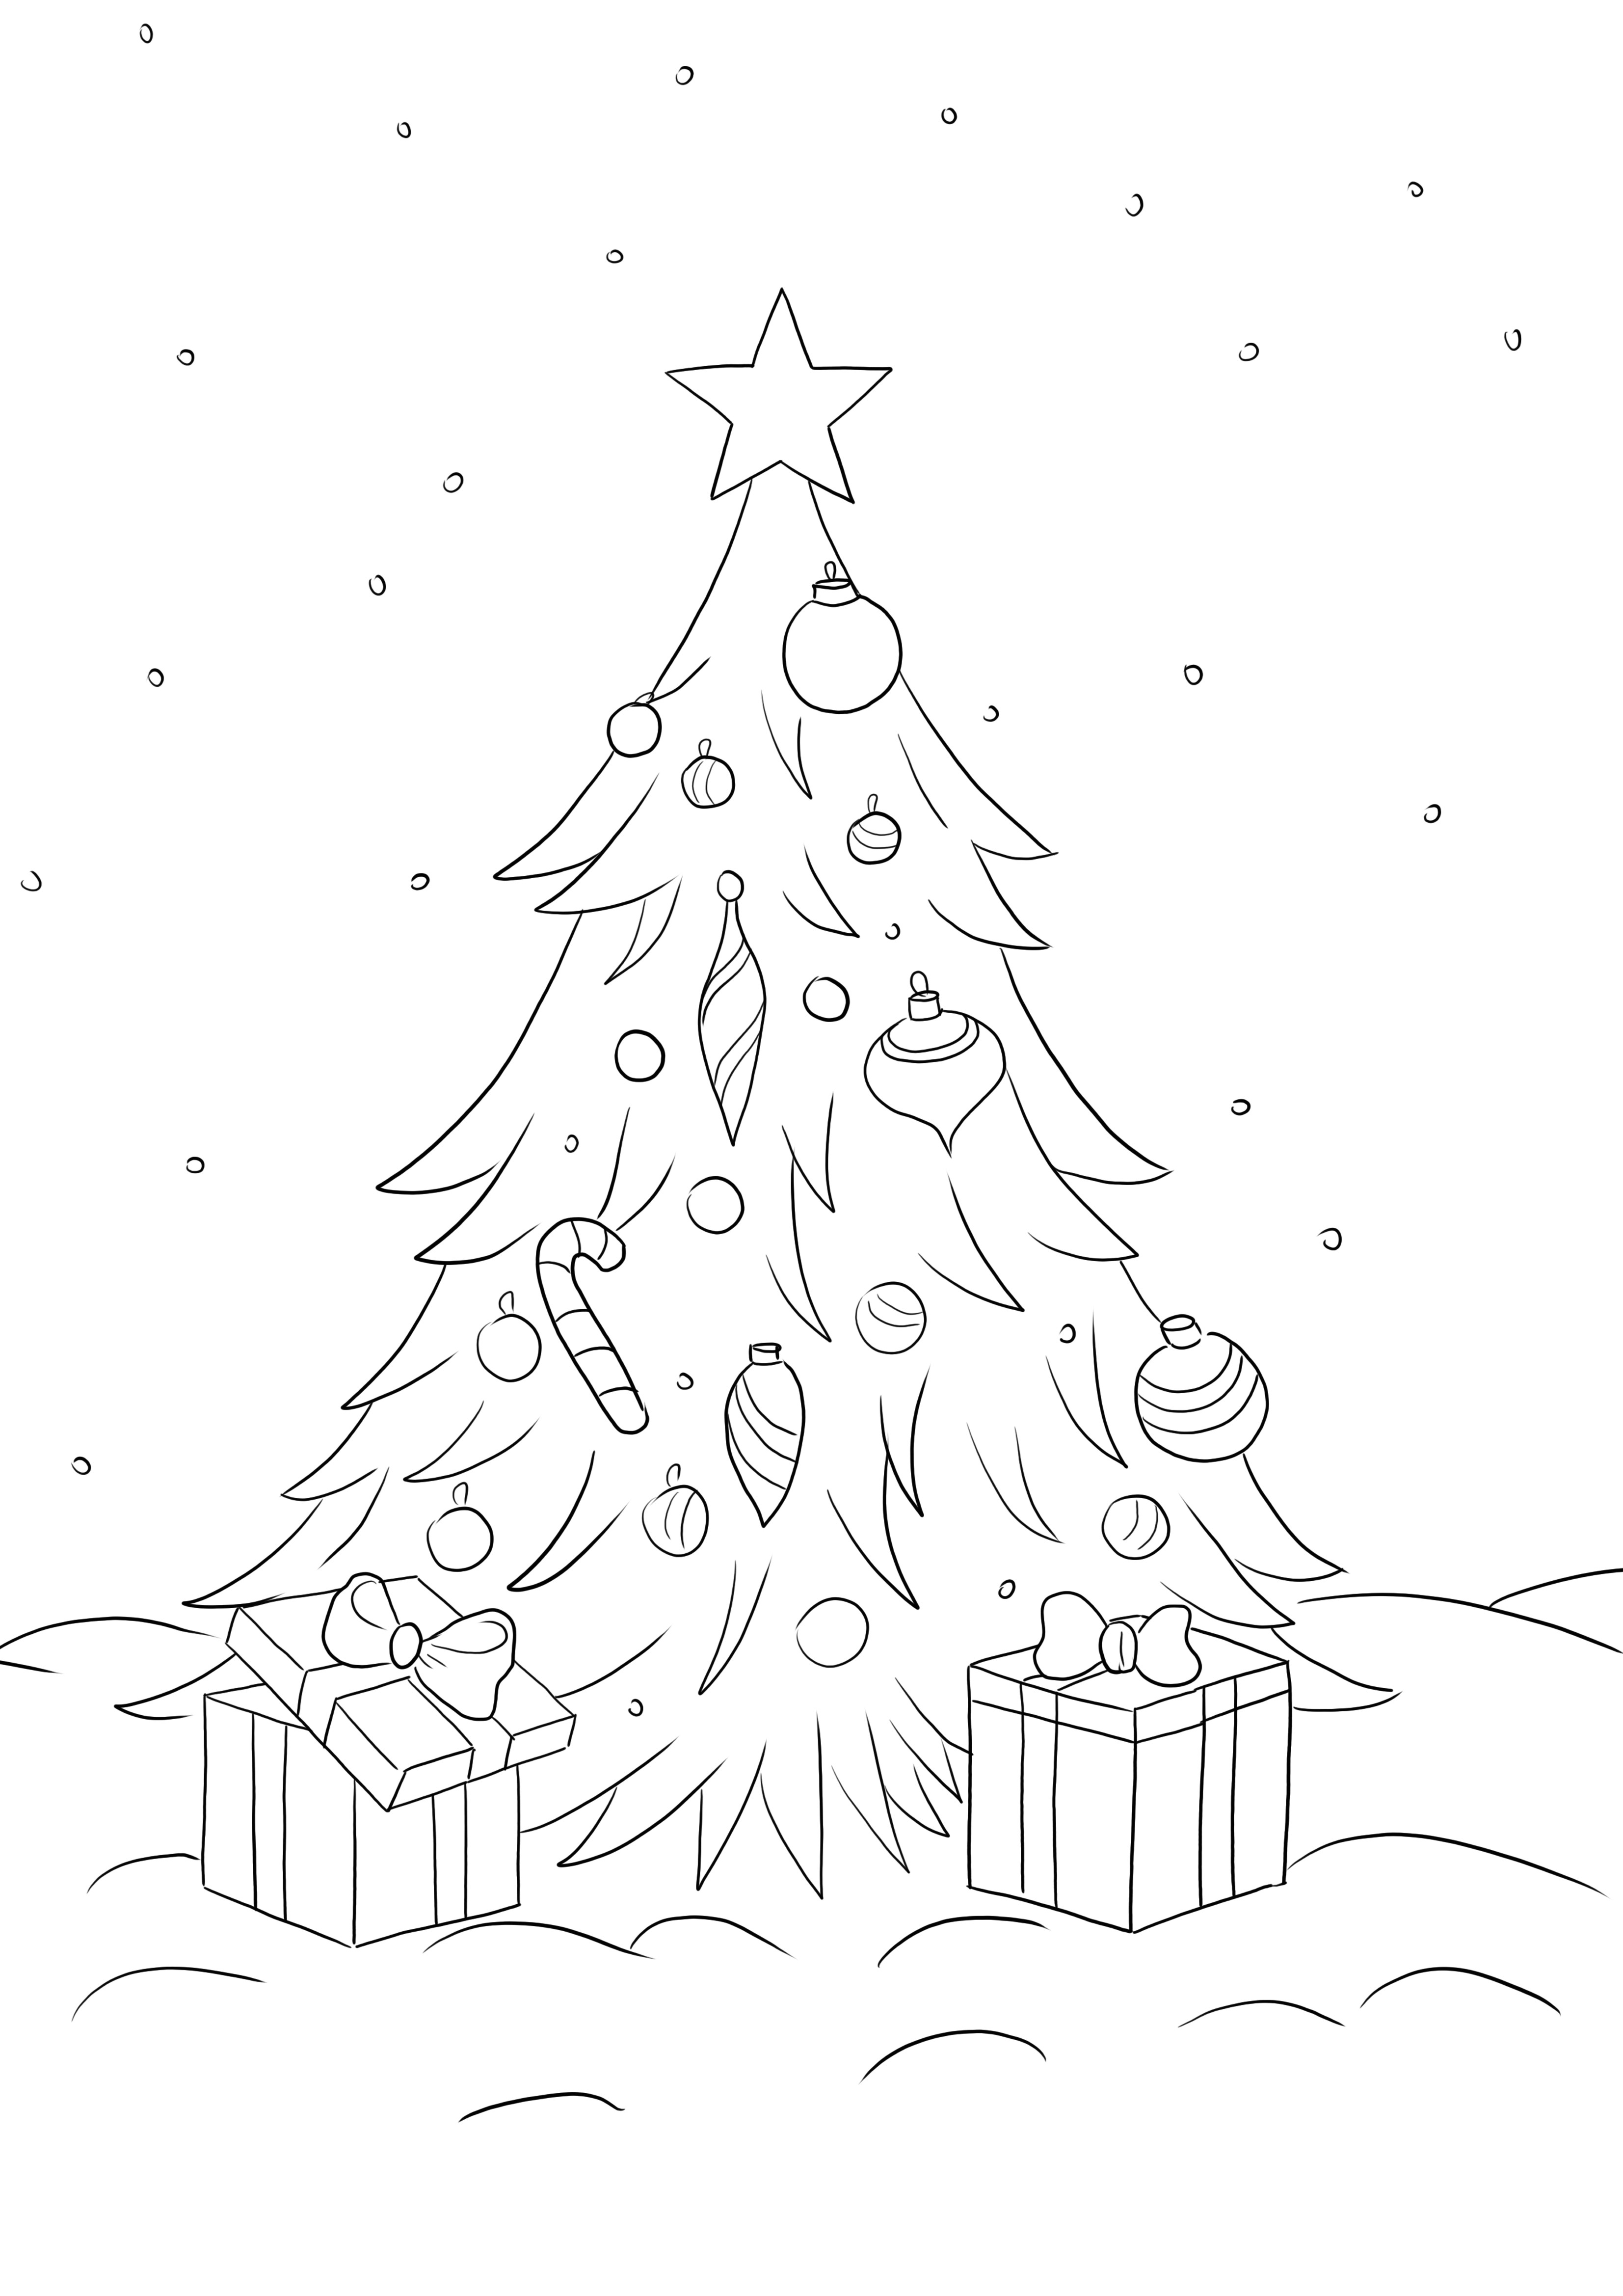 Pohon Natal dengan Hadiah gratis untuk diunduh dan diwarnai